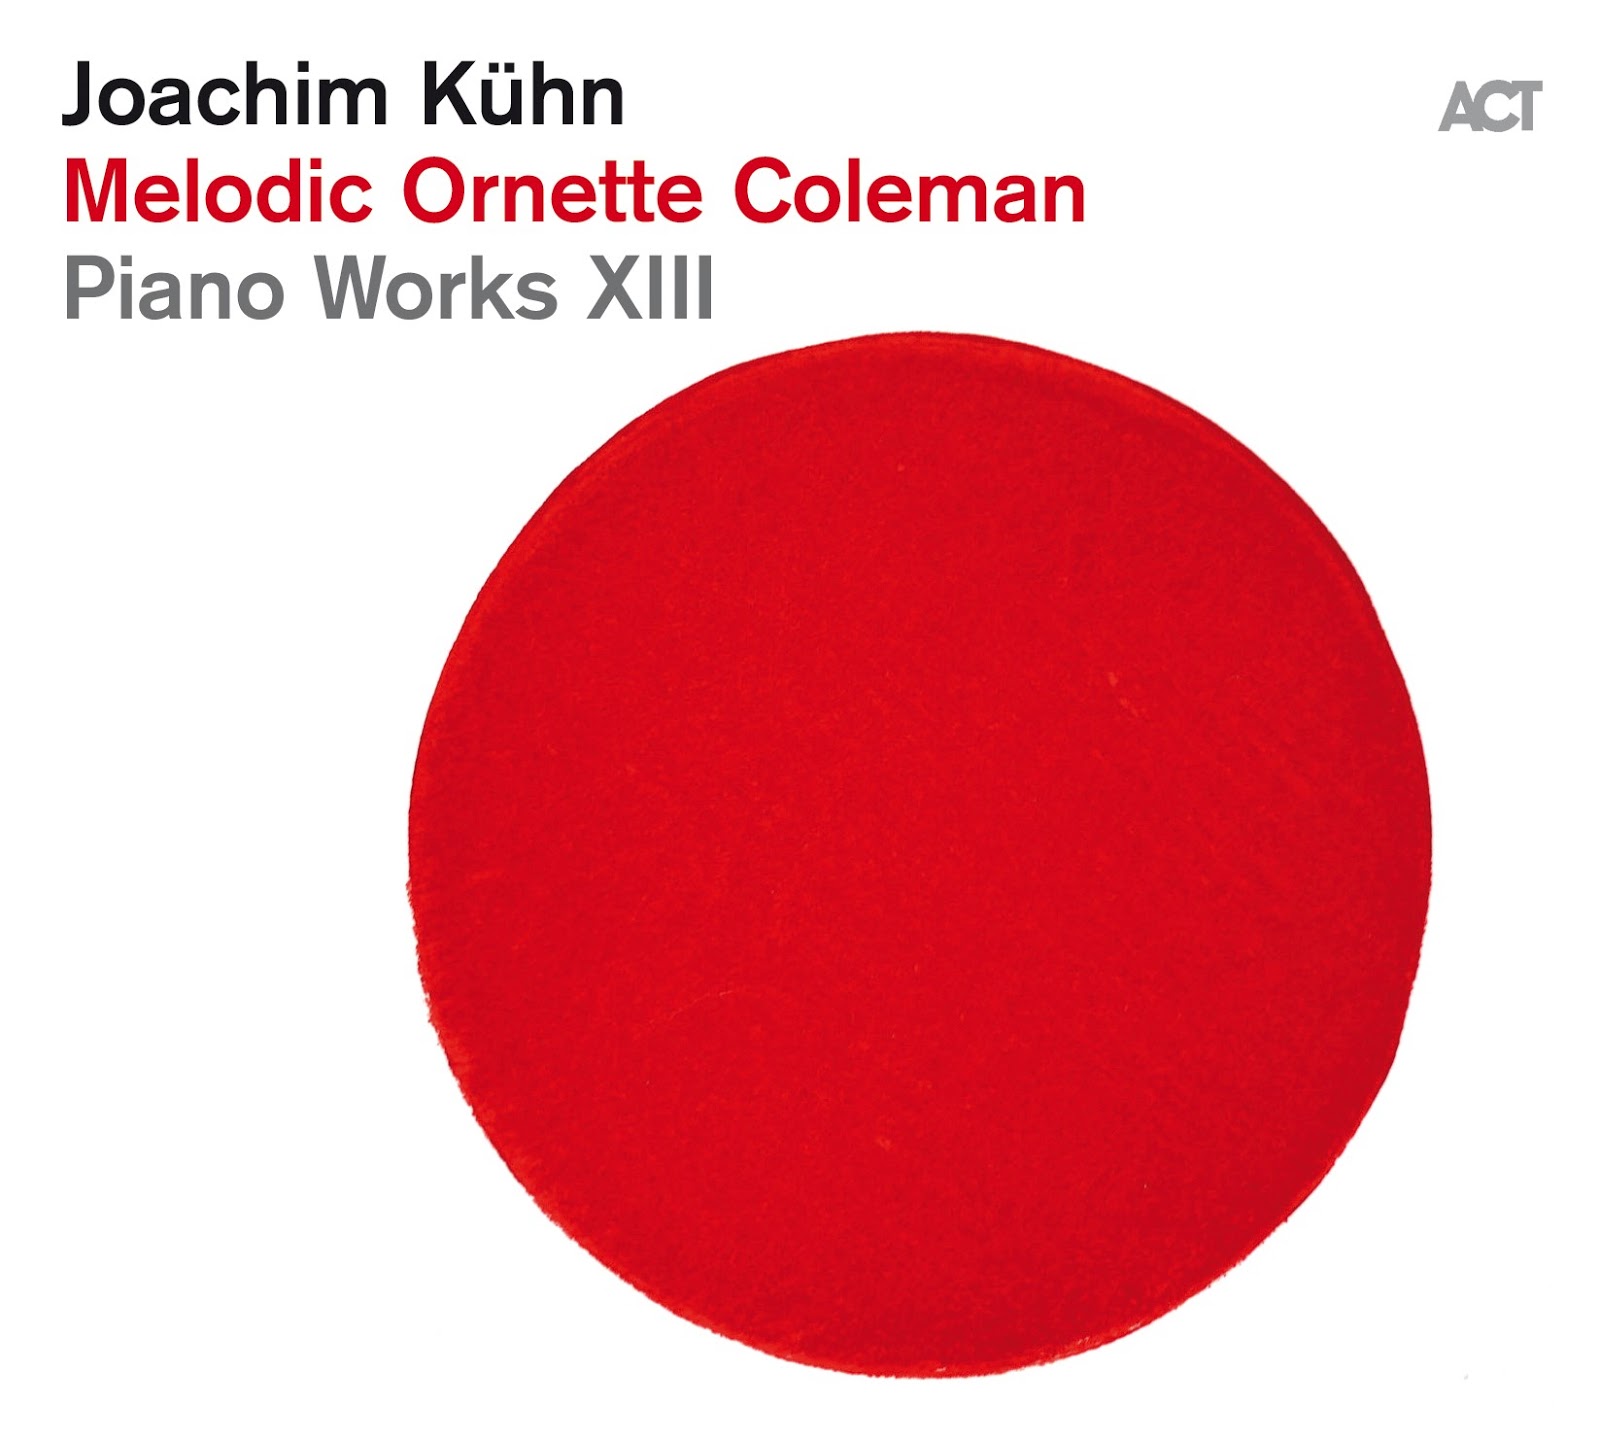 Joachim Kühn - Melodic Ornette Coleman